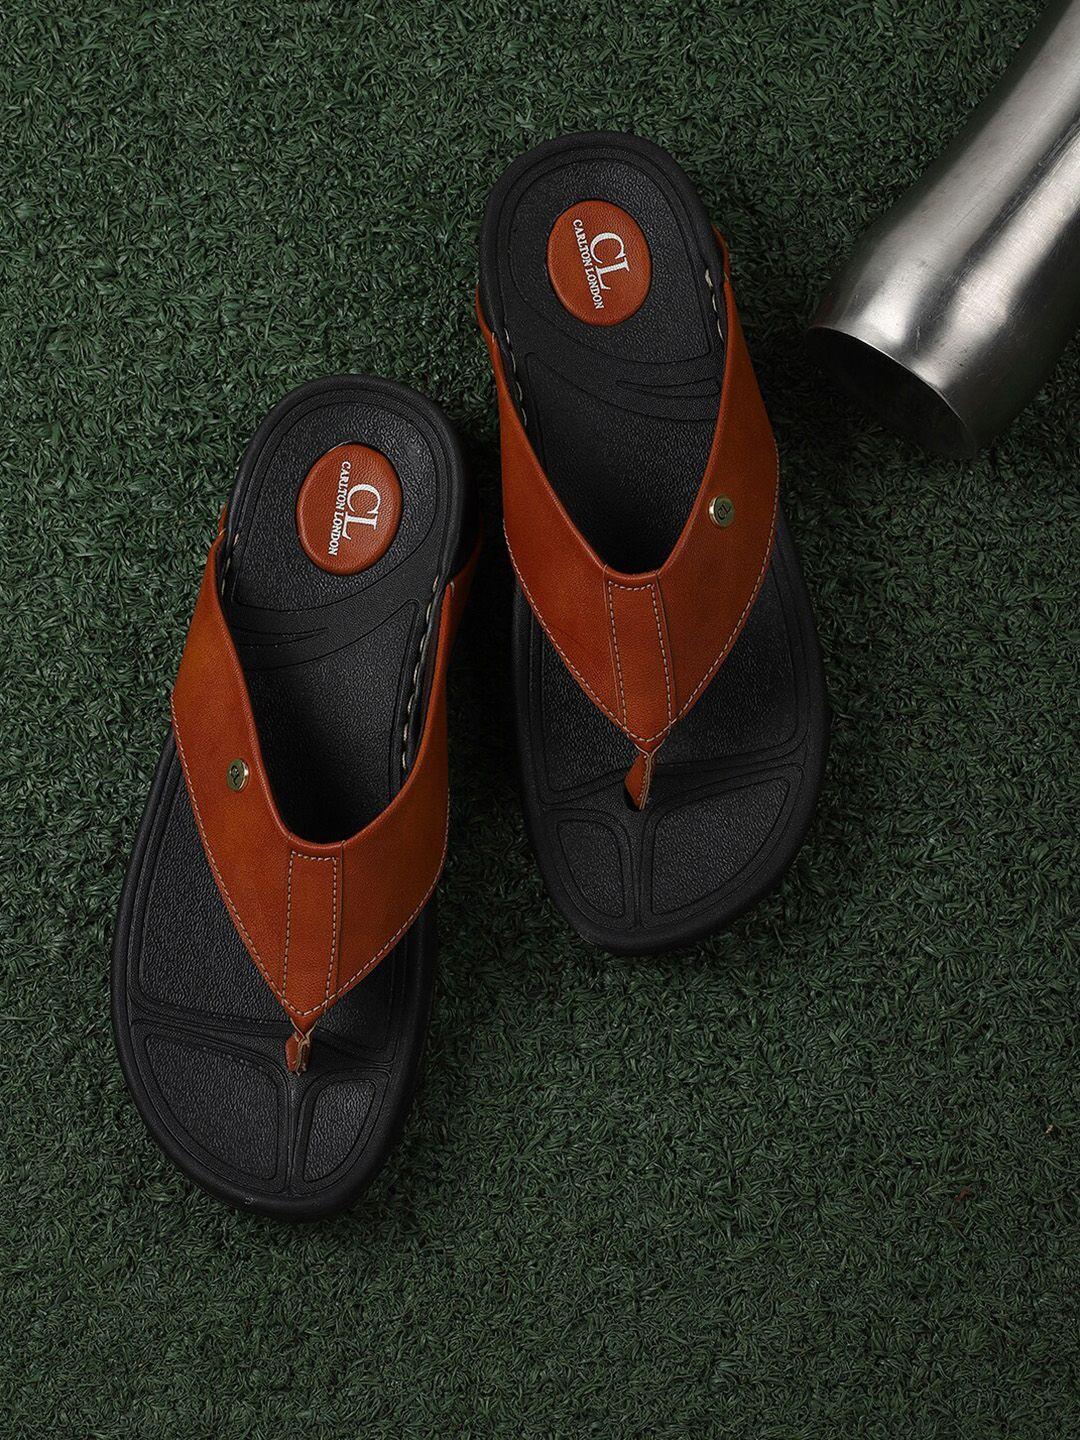 carlton london men tan & black solid comfort sandals